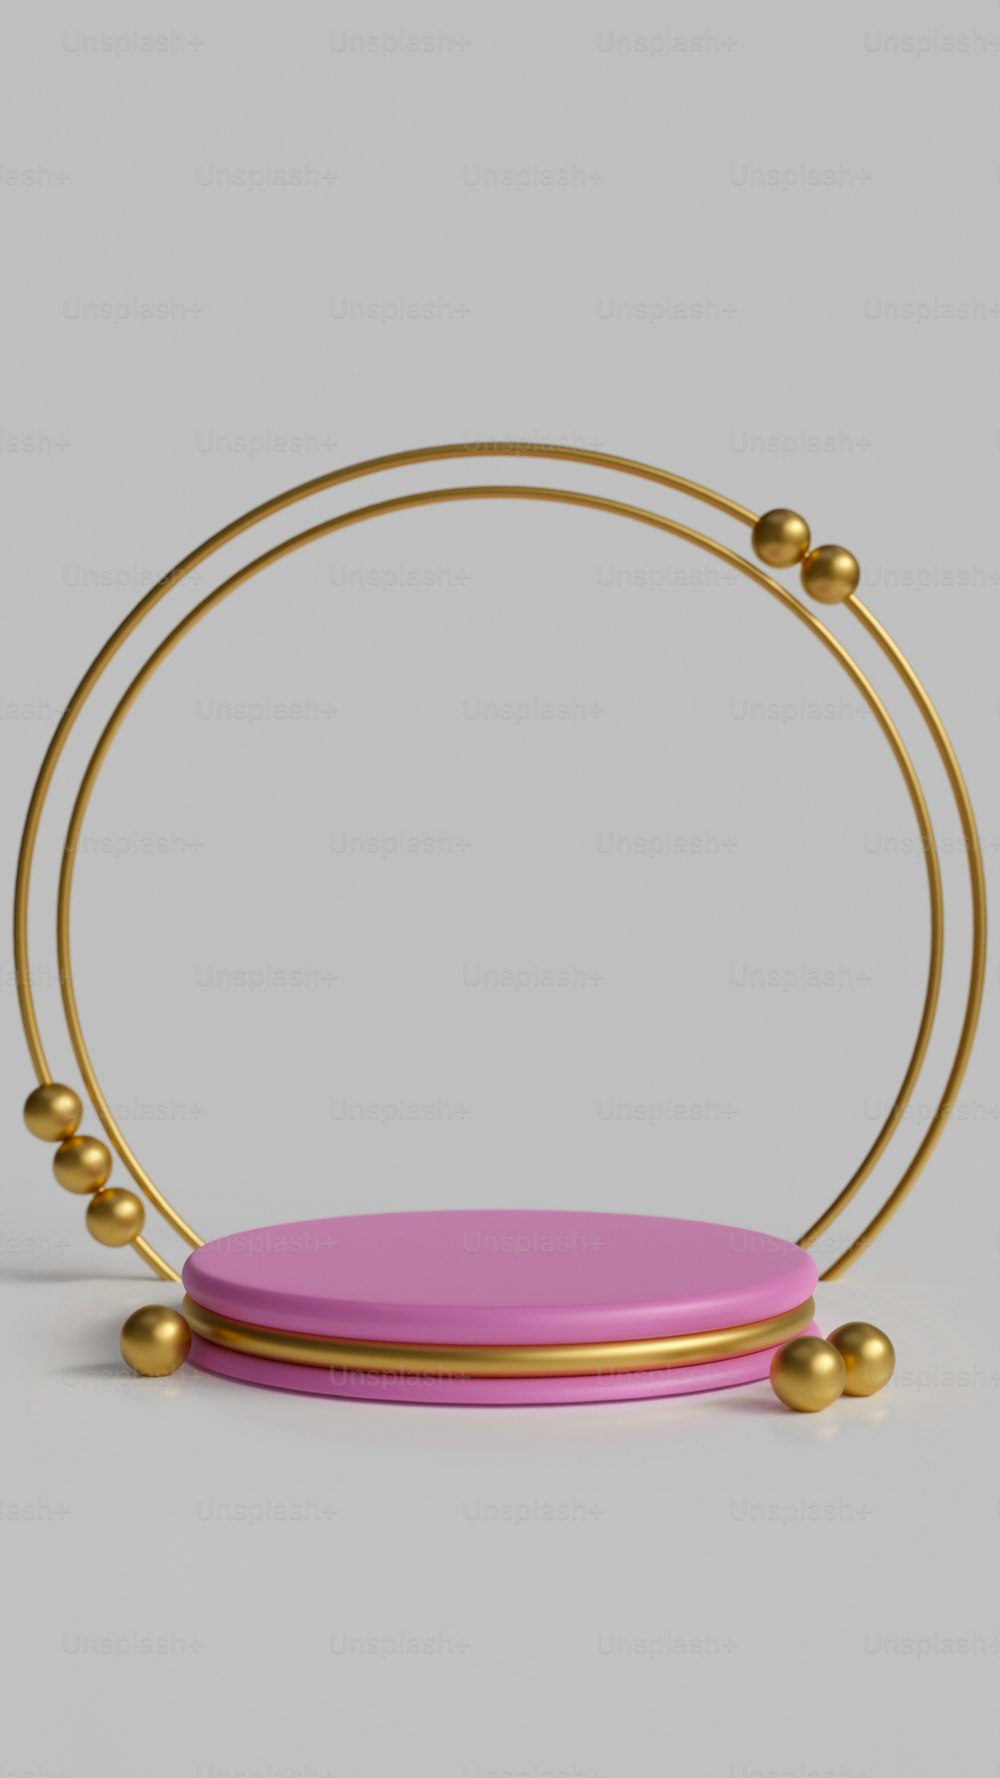 um objeto rosa com bolas de ouro em torno dele